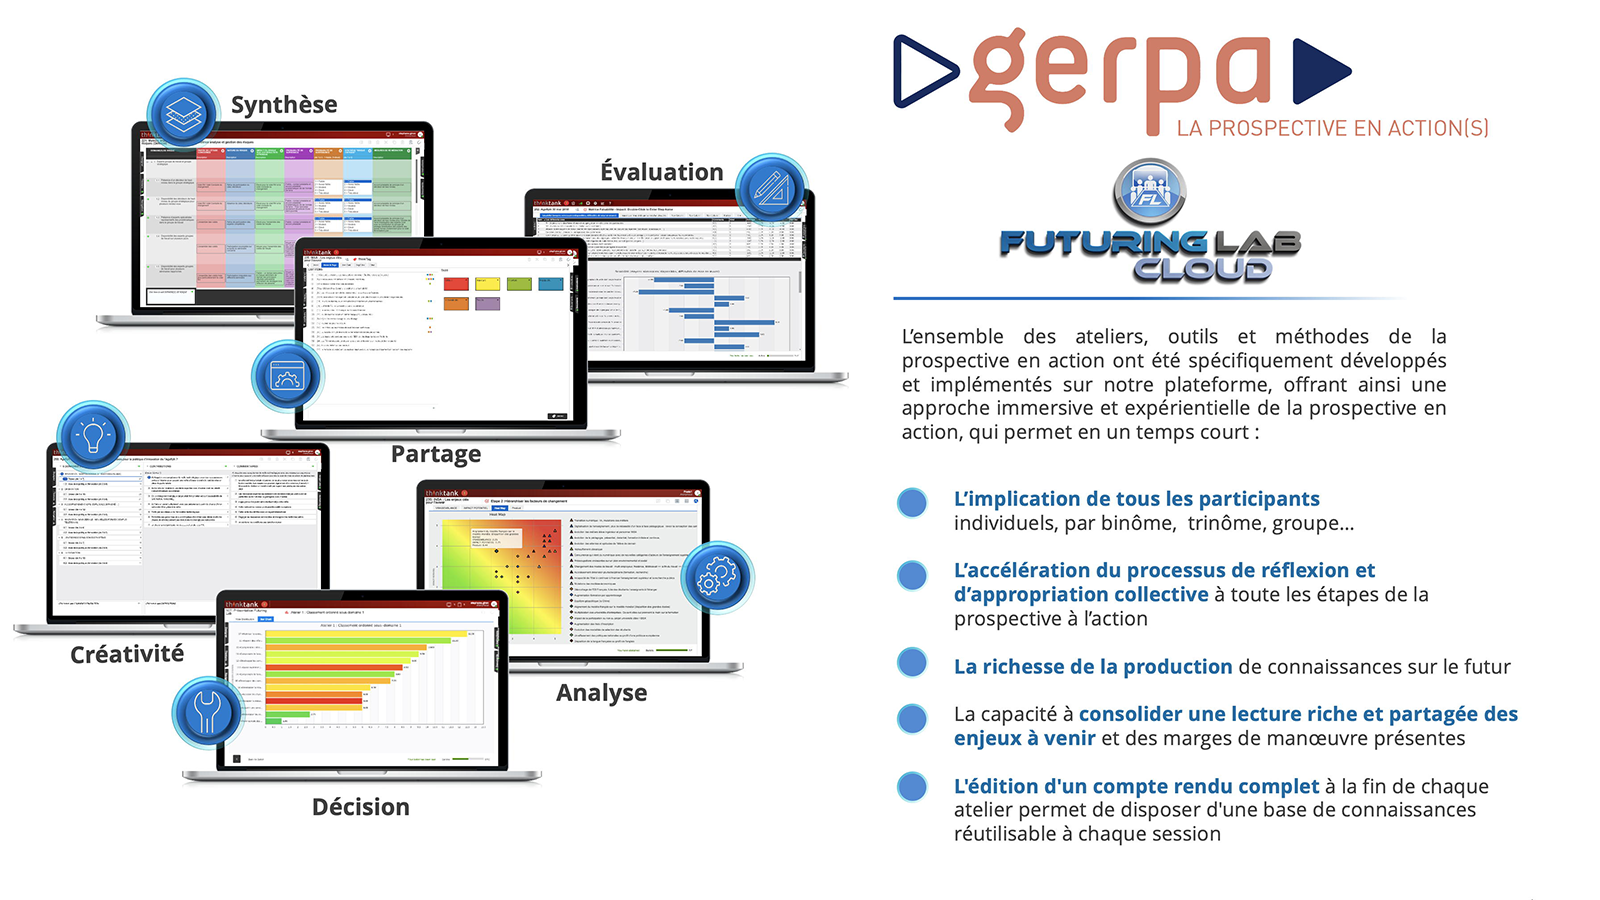 GERPA et Futuring Lab Cloud - L'ensemble des ateliers, outils et méthodes de la prospective en action